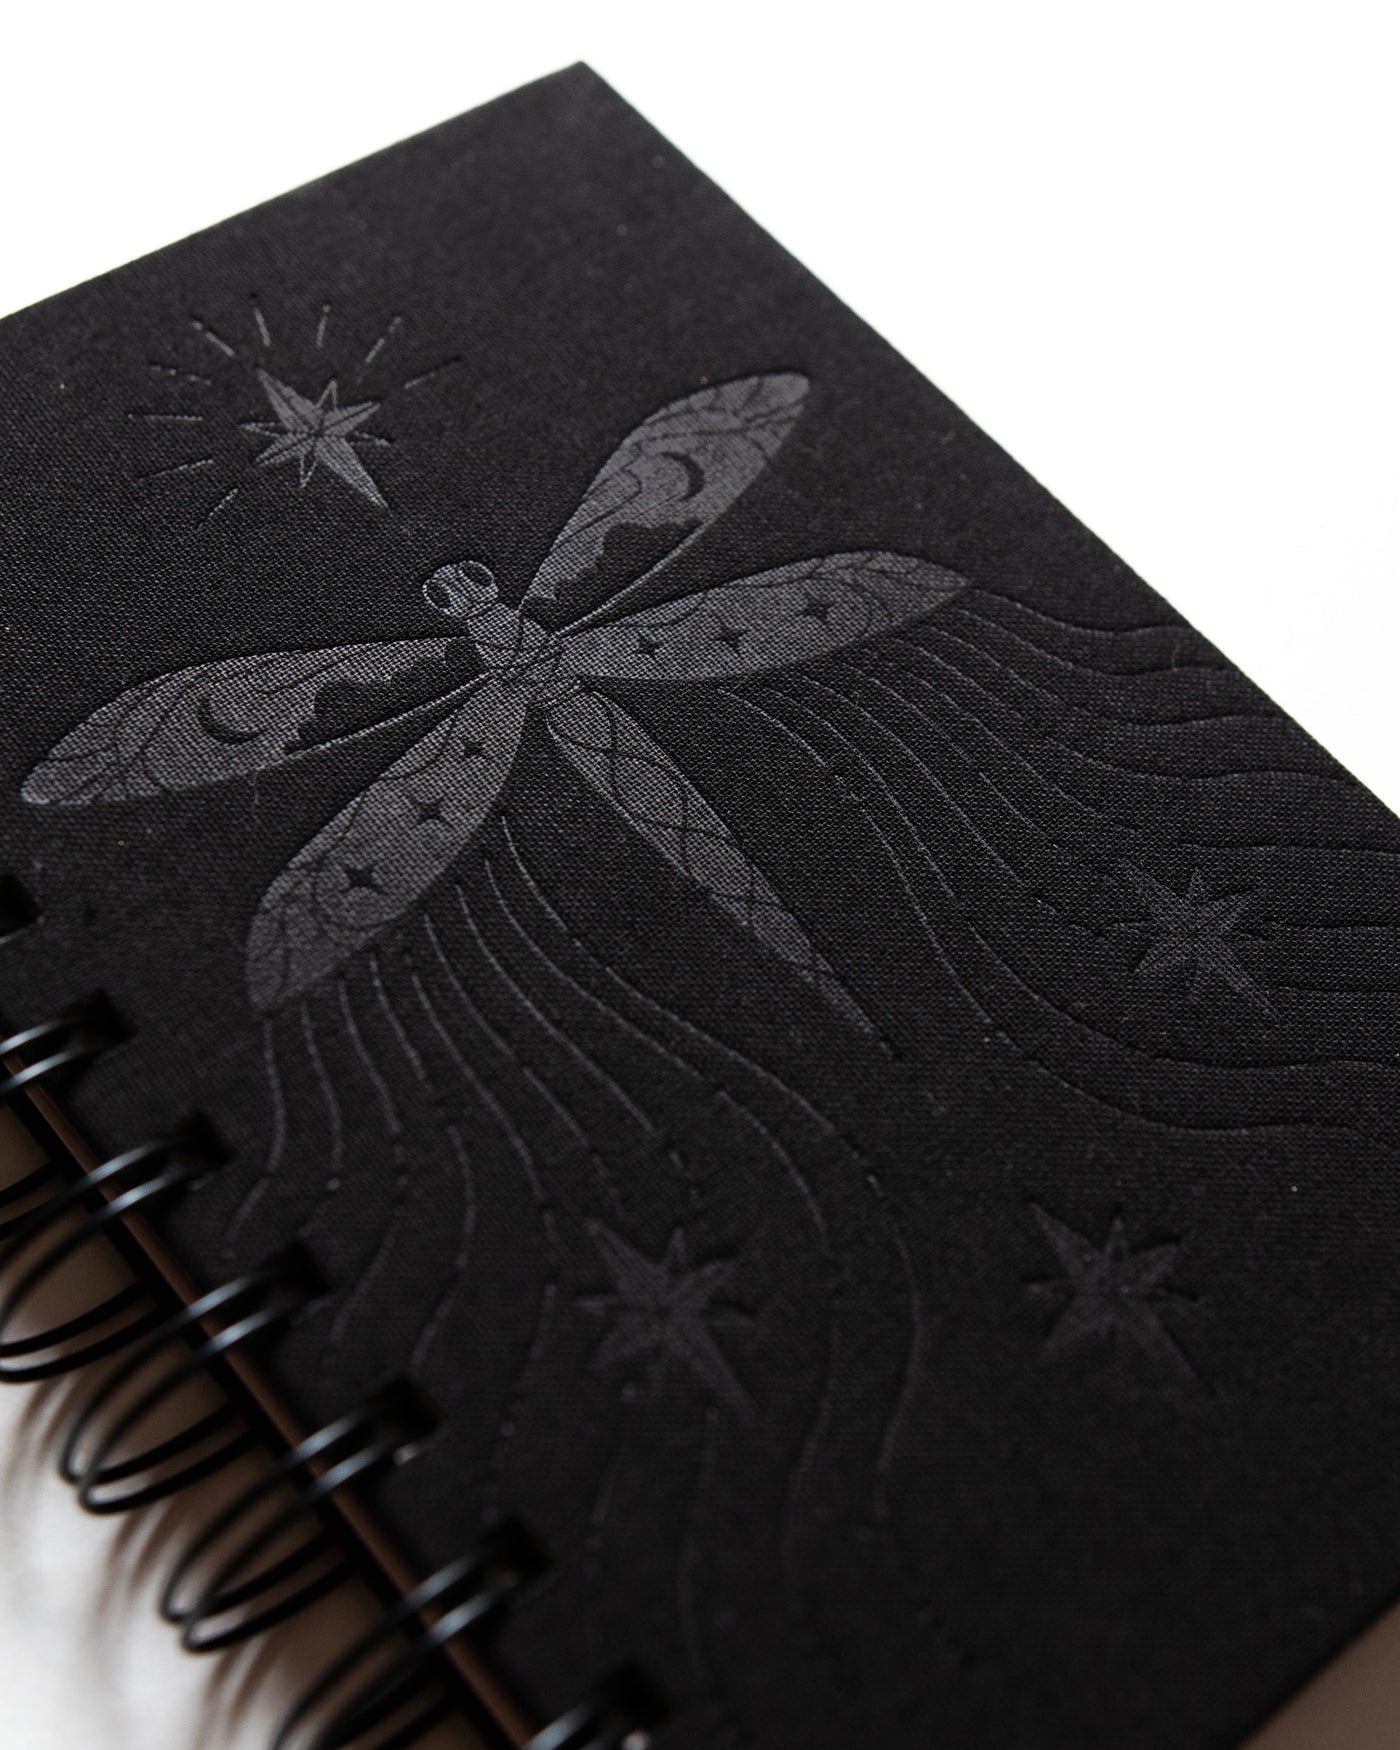 Dragonfly Spiral Bound Notebook